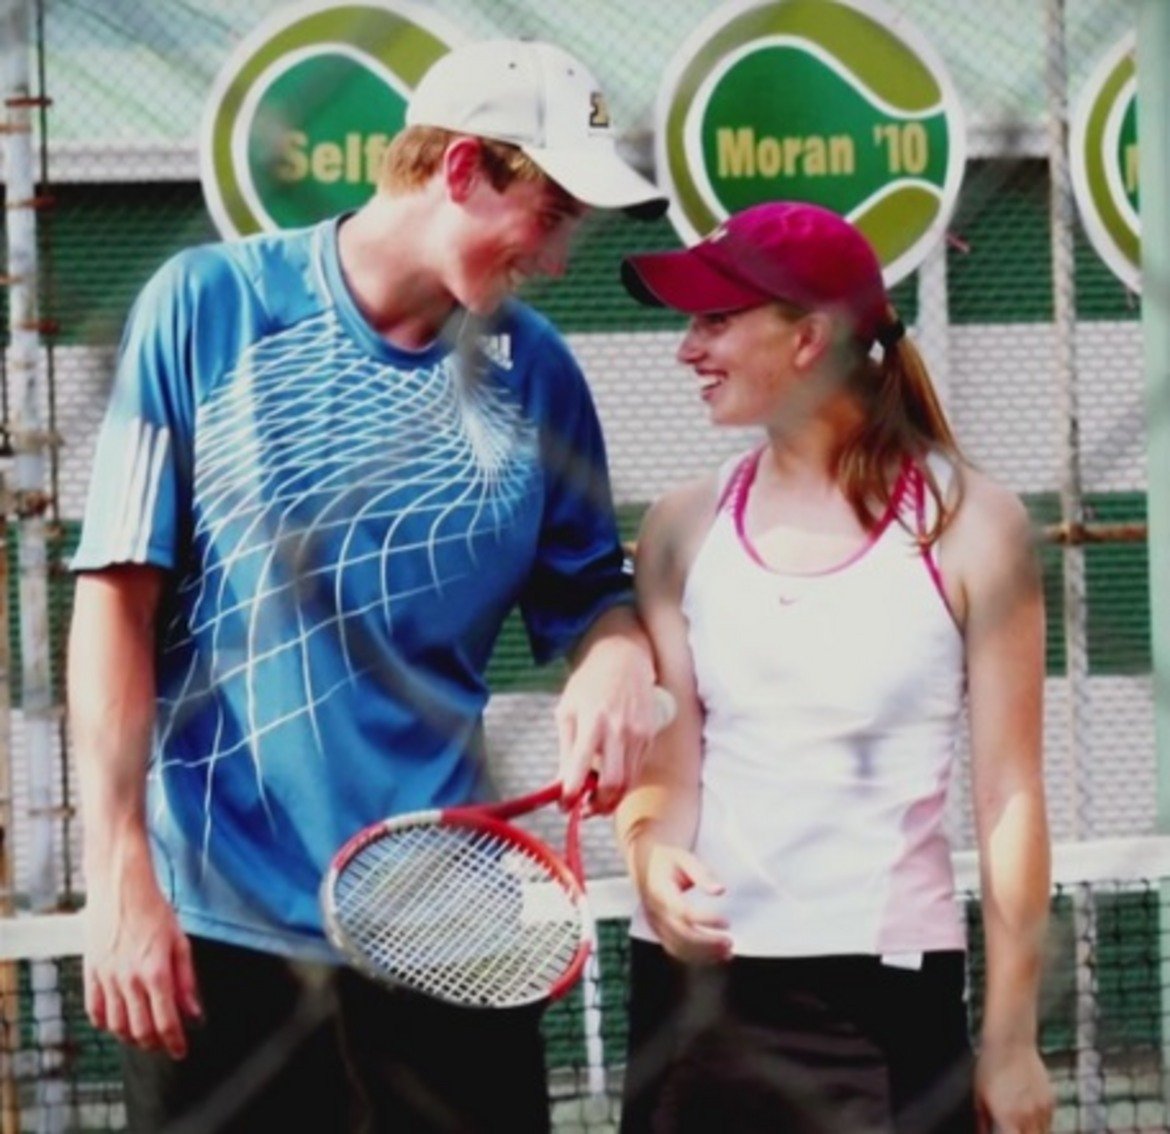 Сестра му се занимава с тенис и днес, но все още не го е побеждавала. Двамата са играли на двойки дълго време като деца, но истинската му страст е сингъла.